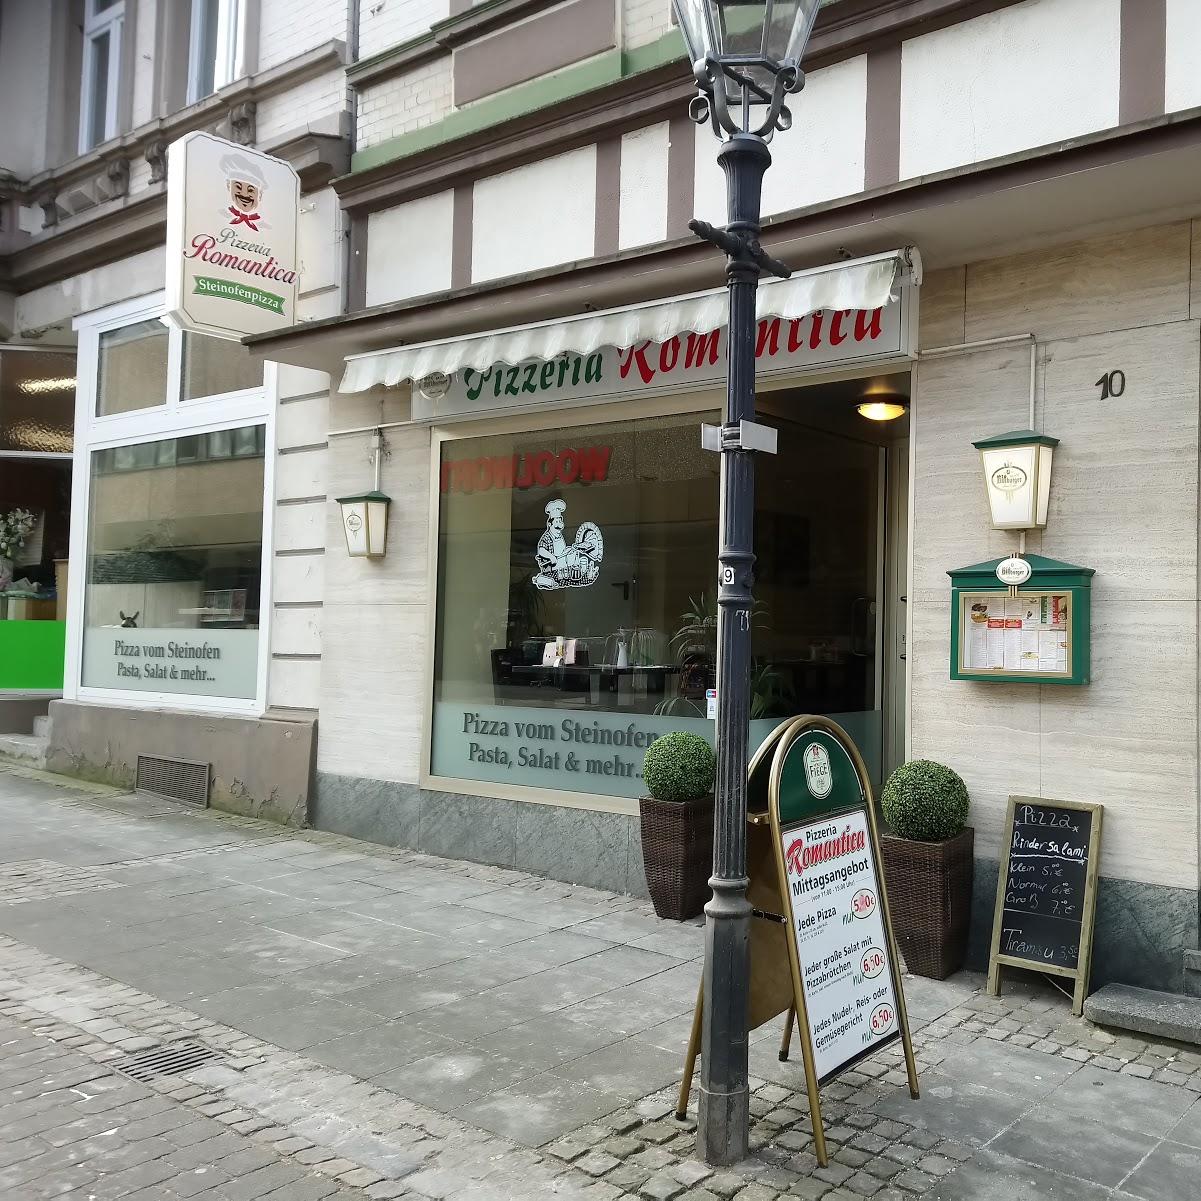 Restaurant "Pizzeria Romantica" in Hagen